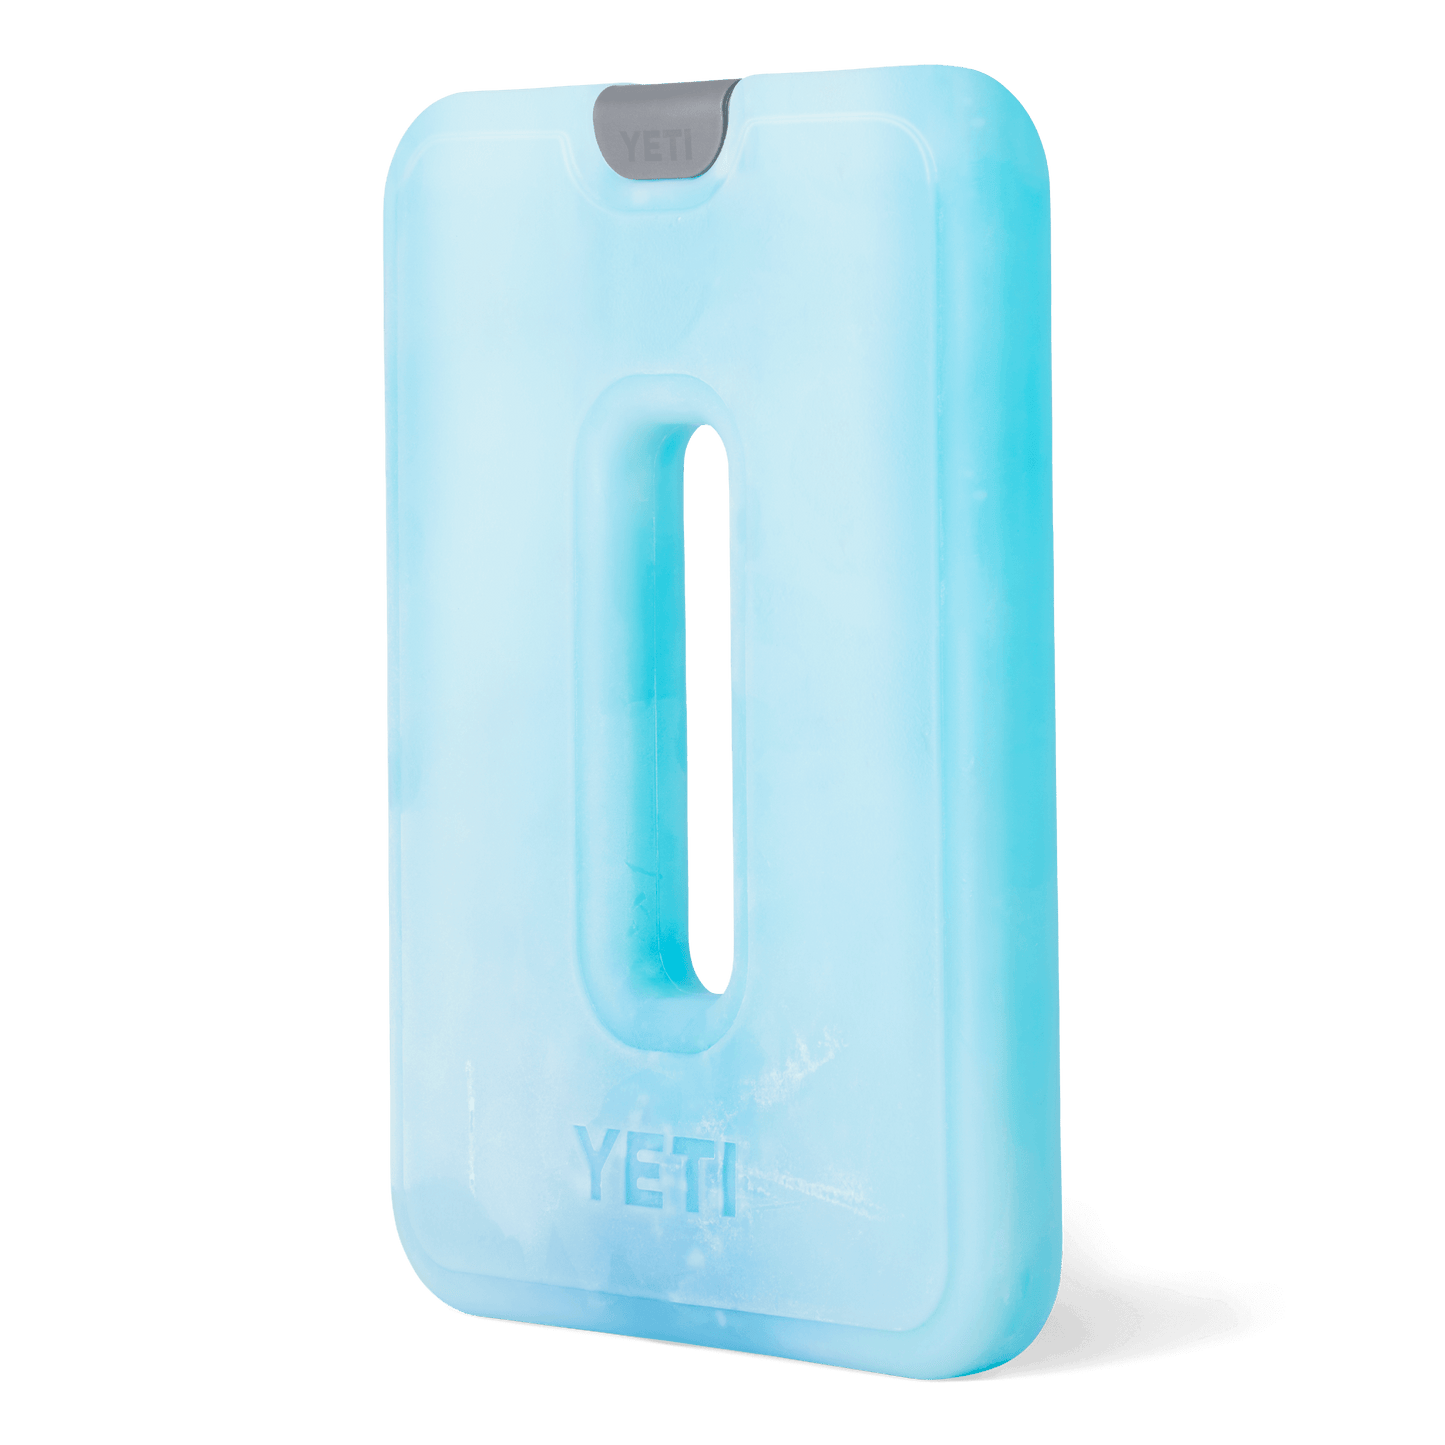 YETI Yeti Thin Ice Large Ice Pack Clear Large